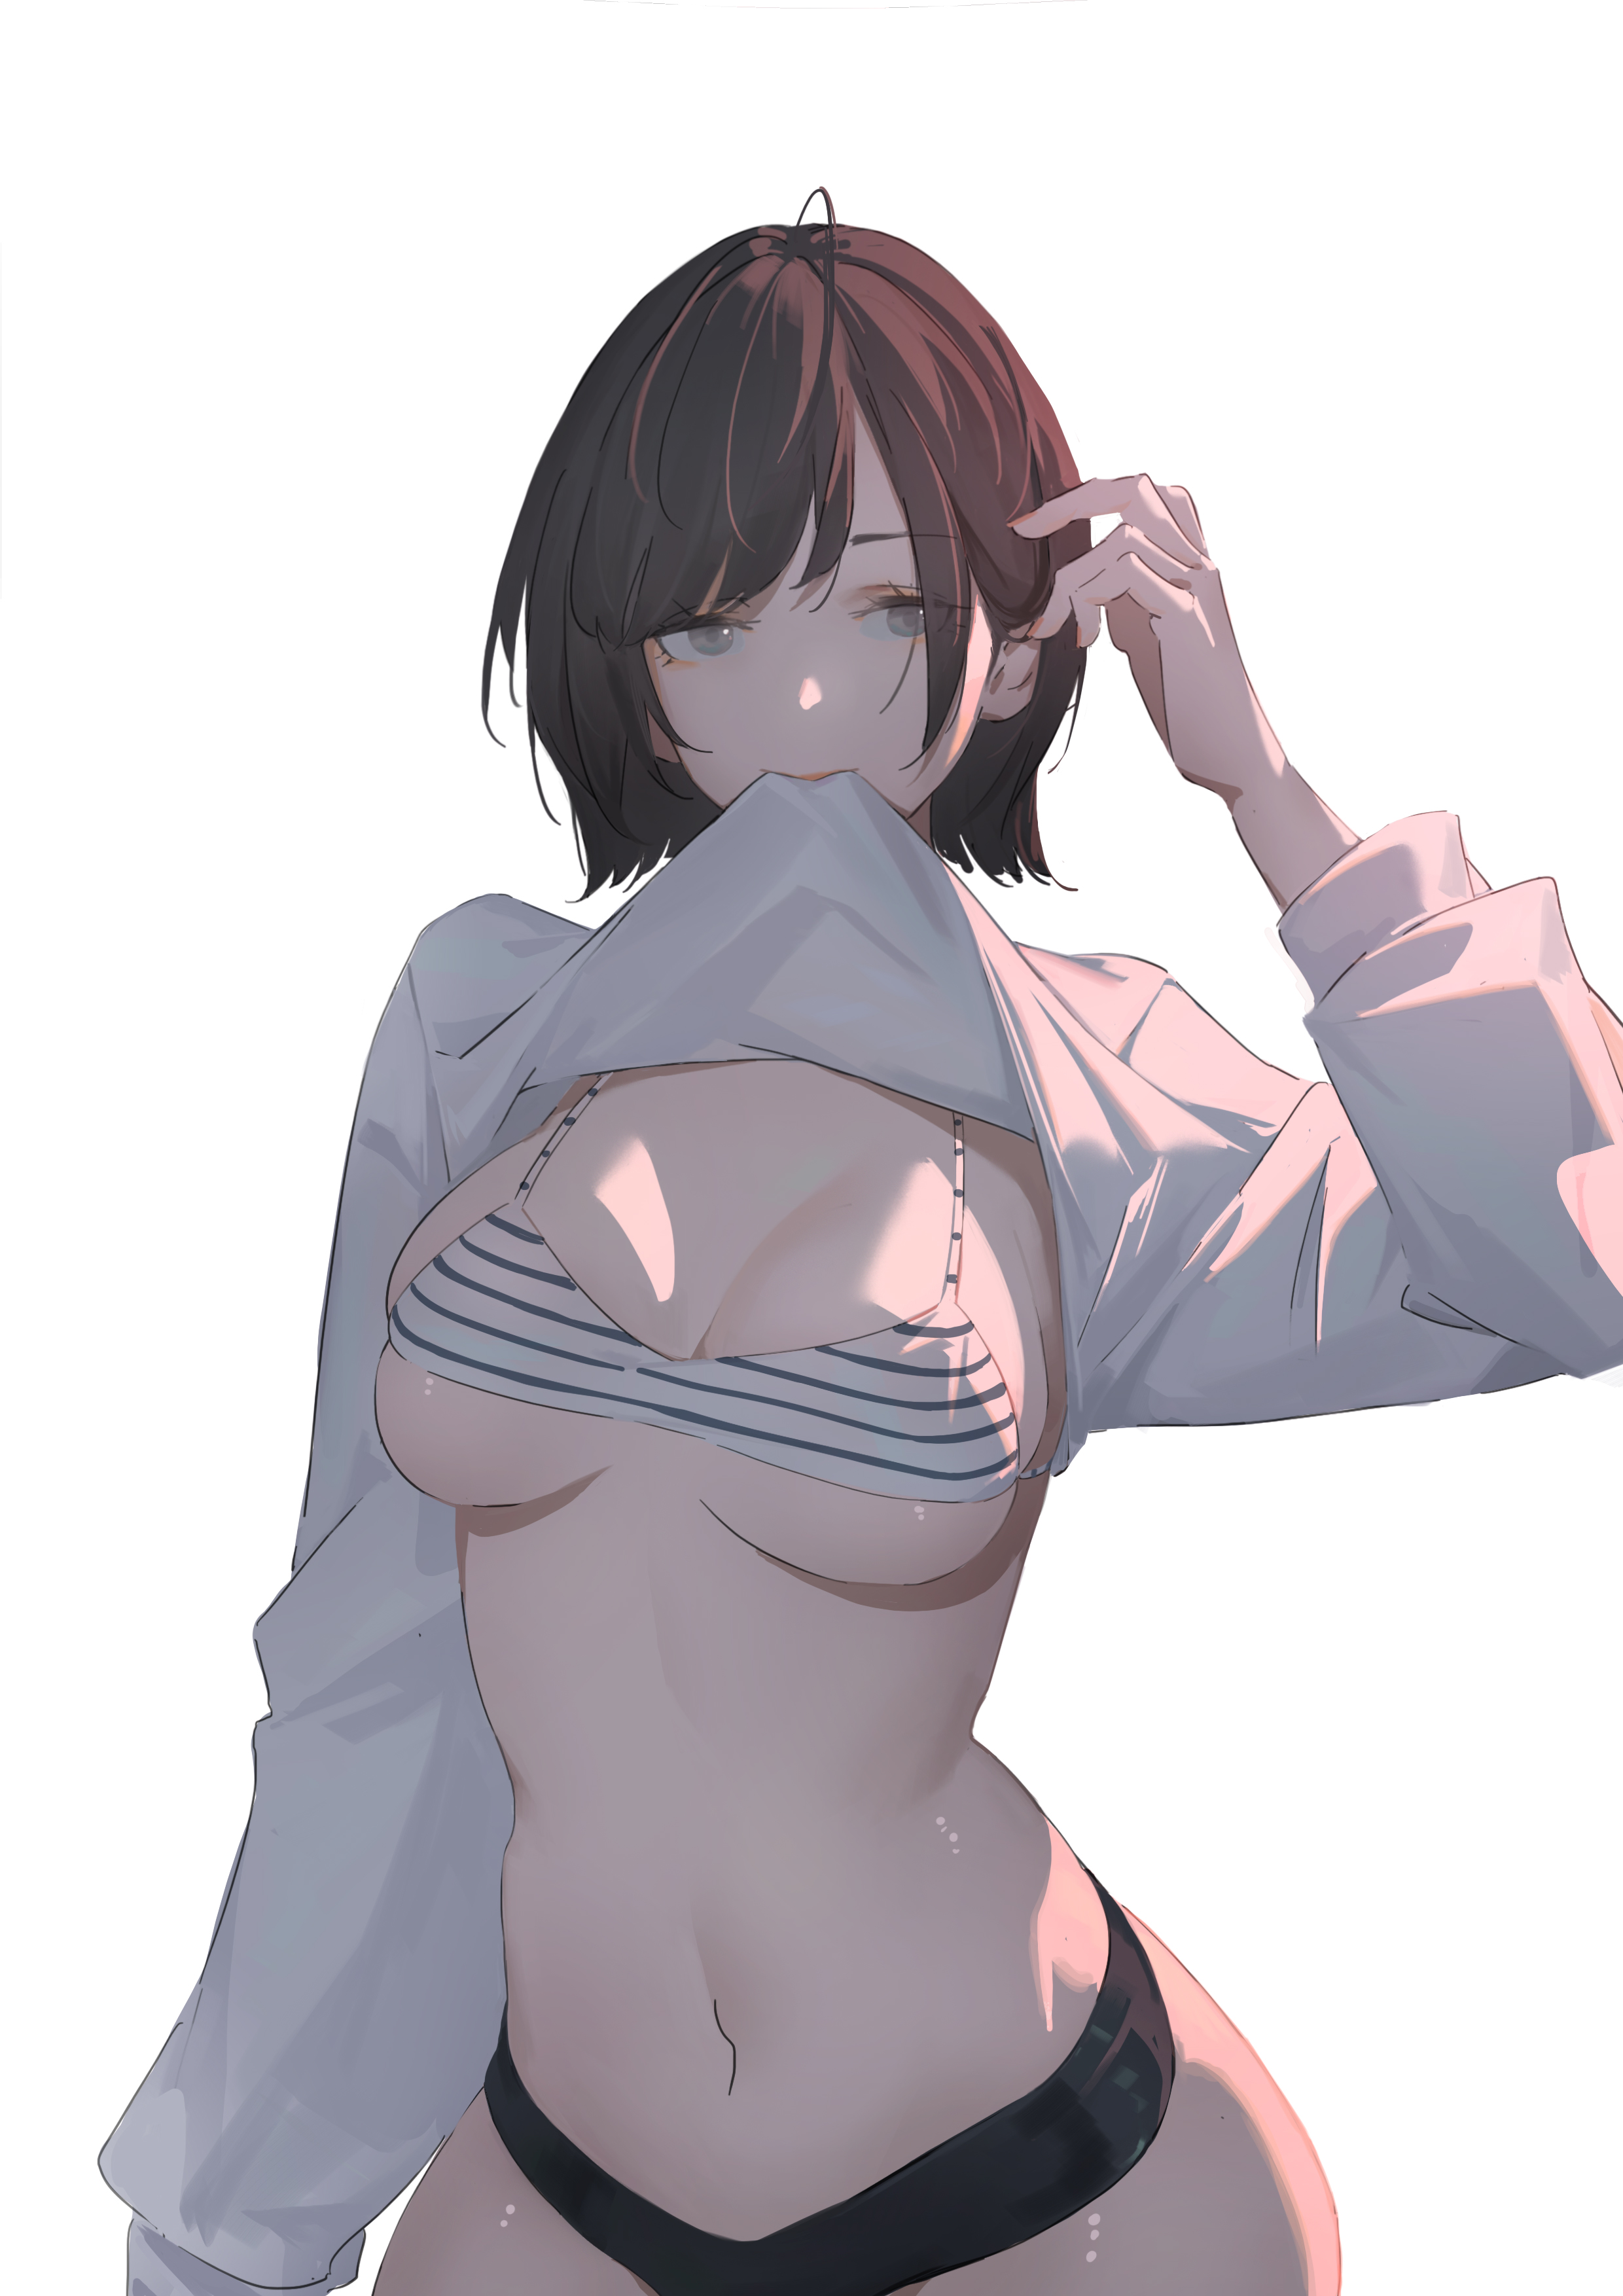 Anime 2480x3508 anime anime girls HUANG bikini